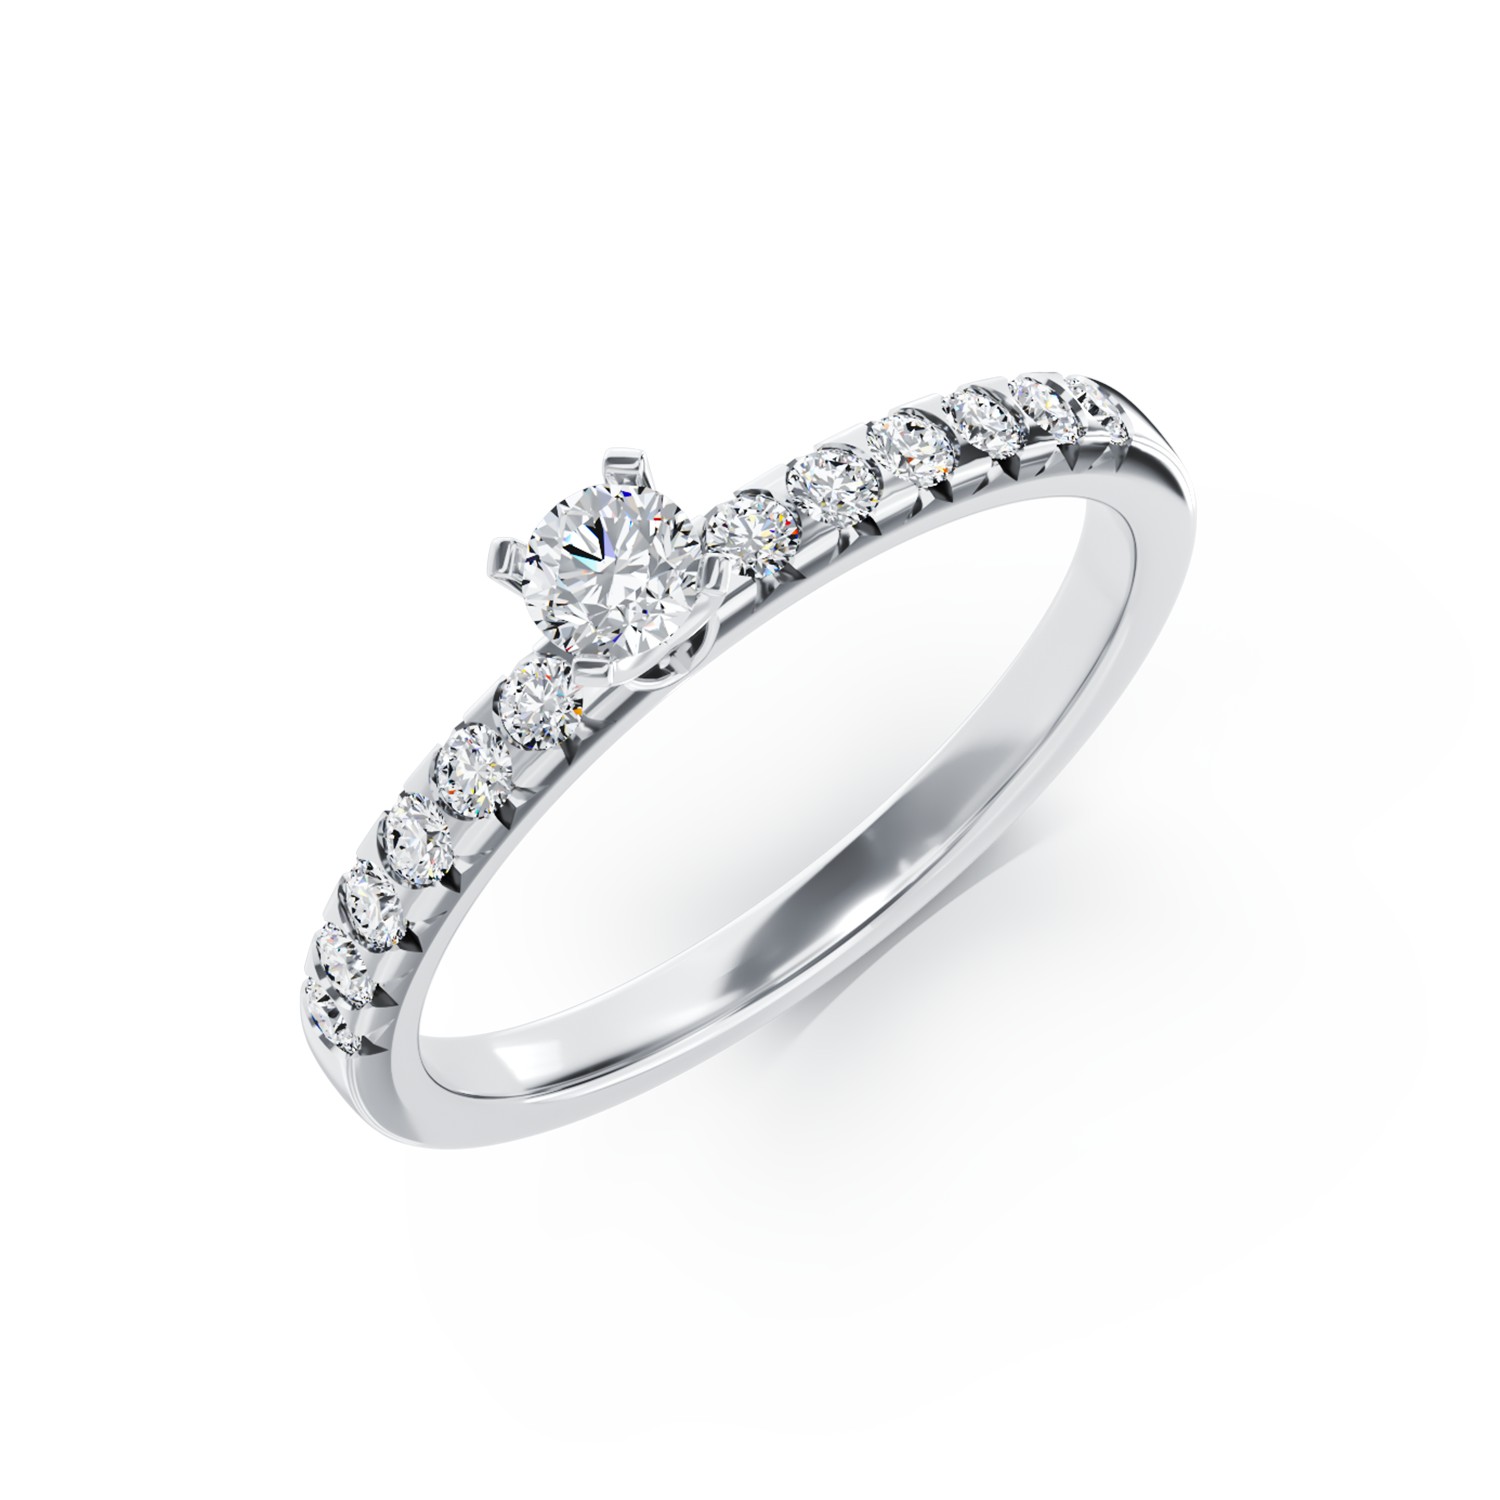 Eljegyzési gyűrű 18K-os fehér aranyból 0,25ct gyémánttal és 0,25ct gyémánttal. Gramm: 2,67